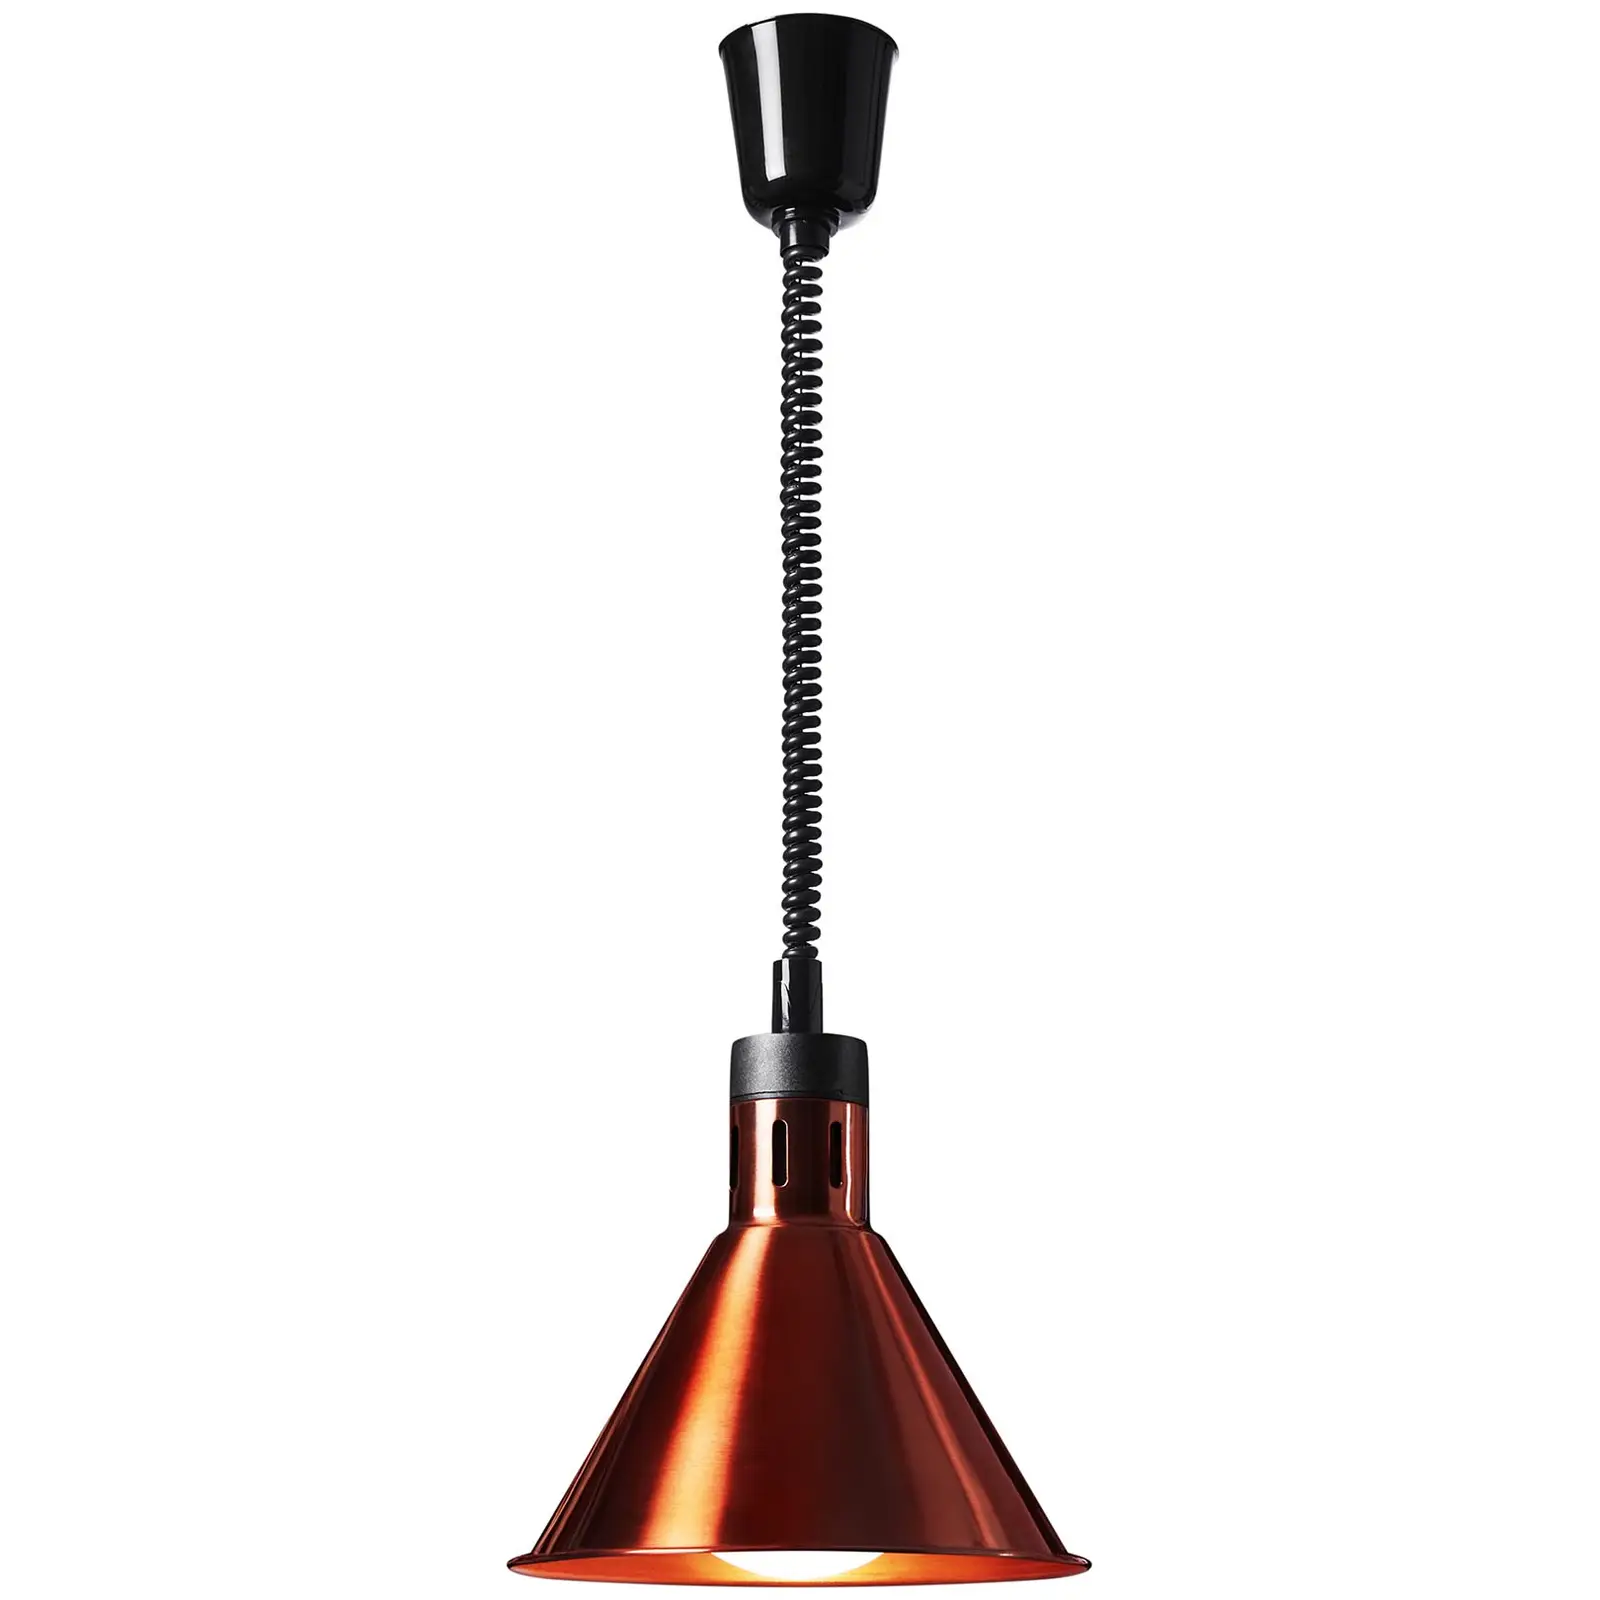 Lampada riscaldante - rame - 27 x 27 x 31 cm  - acciaio - regolabile in altezza